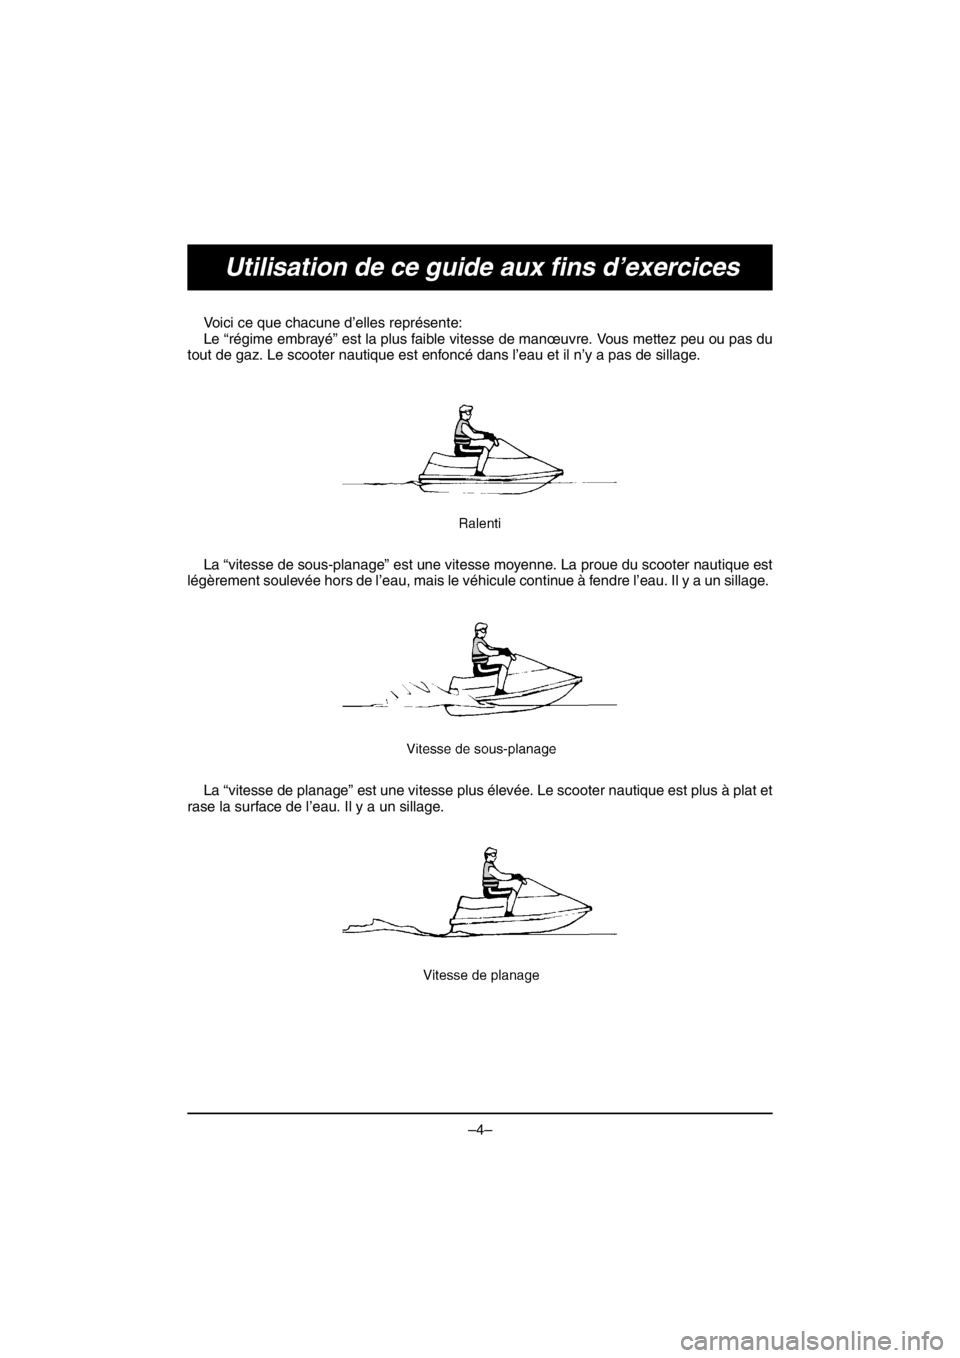 YAMAHA V1 SPORT 2016  Manual de utilização (in Portuguese) –4–
Utilisation de ce guide aux fins d’exercices
Voici ce que chacune d’elles représente: 
Le “régime embrayé” est la plus faible vitesse de manœuvre. Vous mettez peu ou pas du
tout de